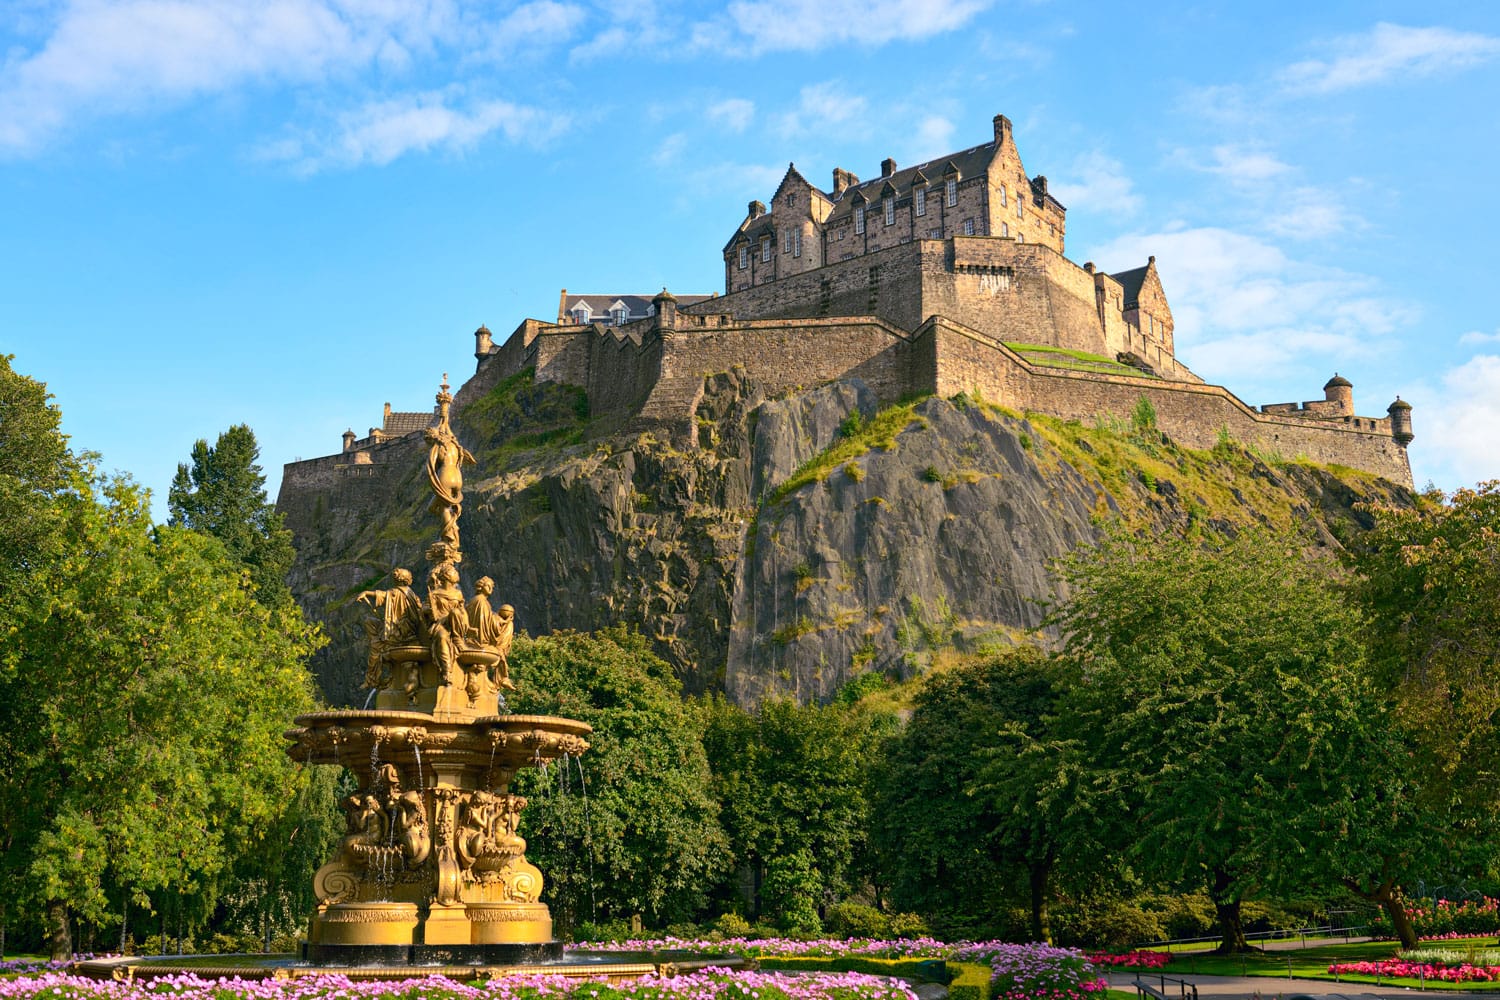 Κάστρο του Εδιμβούργου, Σκωτία, από το Princes Street Gardens, με το σιντριβάνι Ross στο πρώτο πλάνο